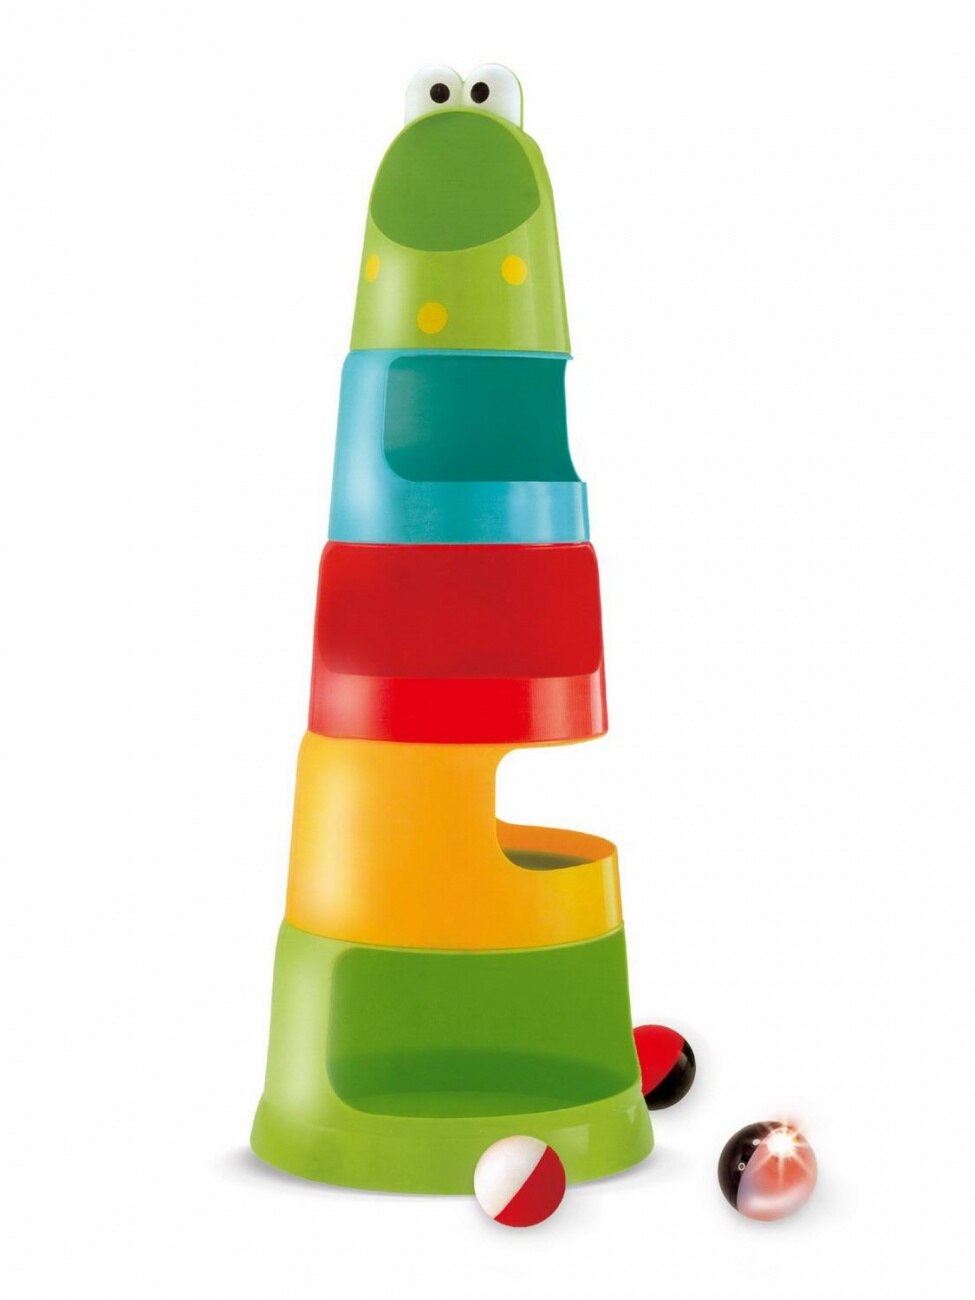 Развивающая игрушка Пирамидка: 3 шарика, один со светом, высота 53 см, 2xAG13, включ.